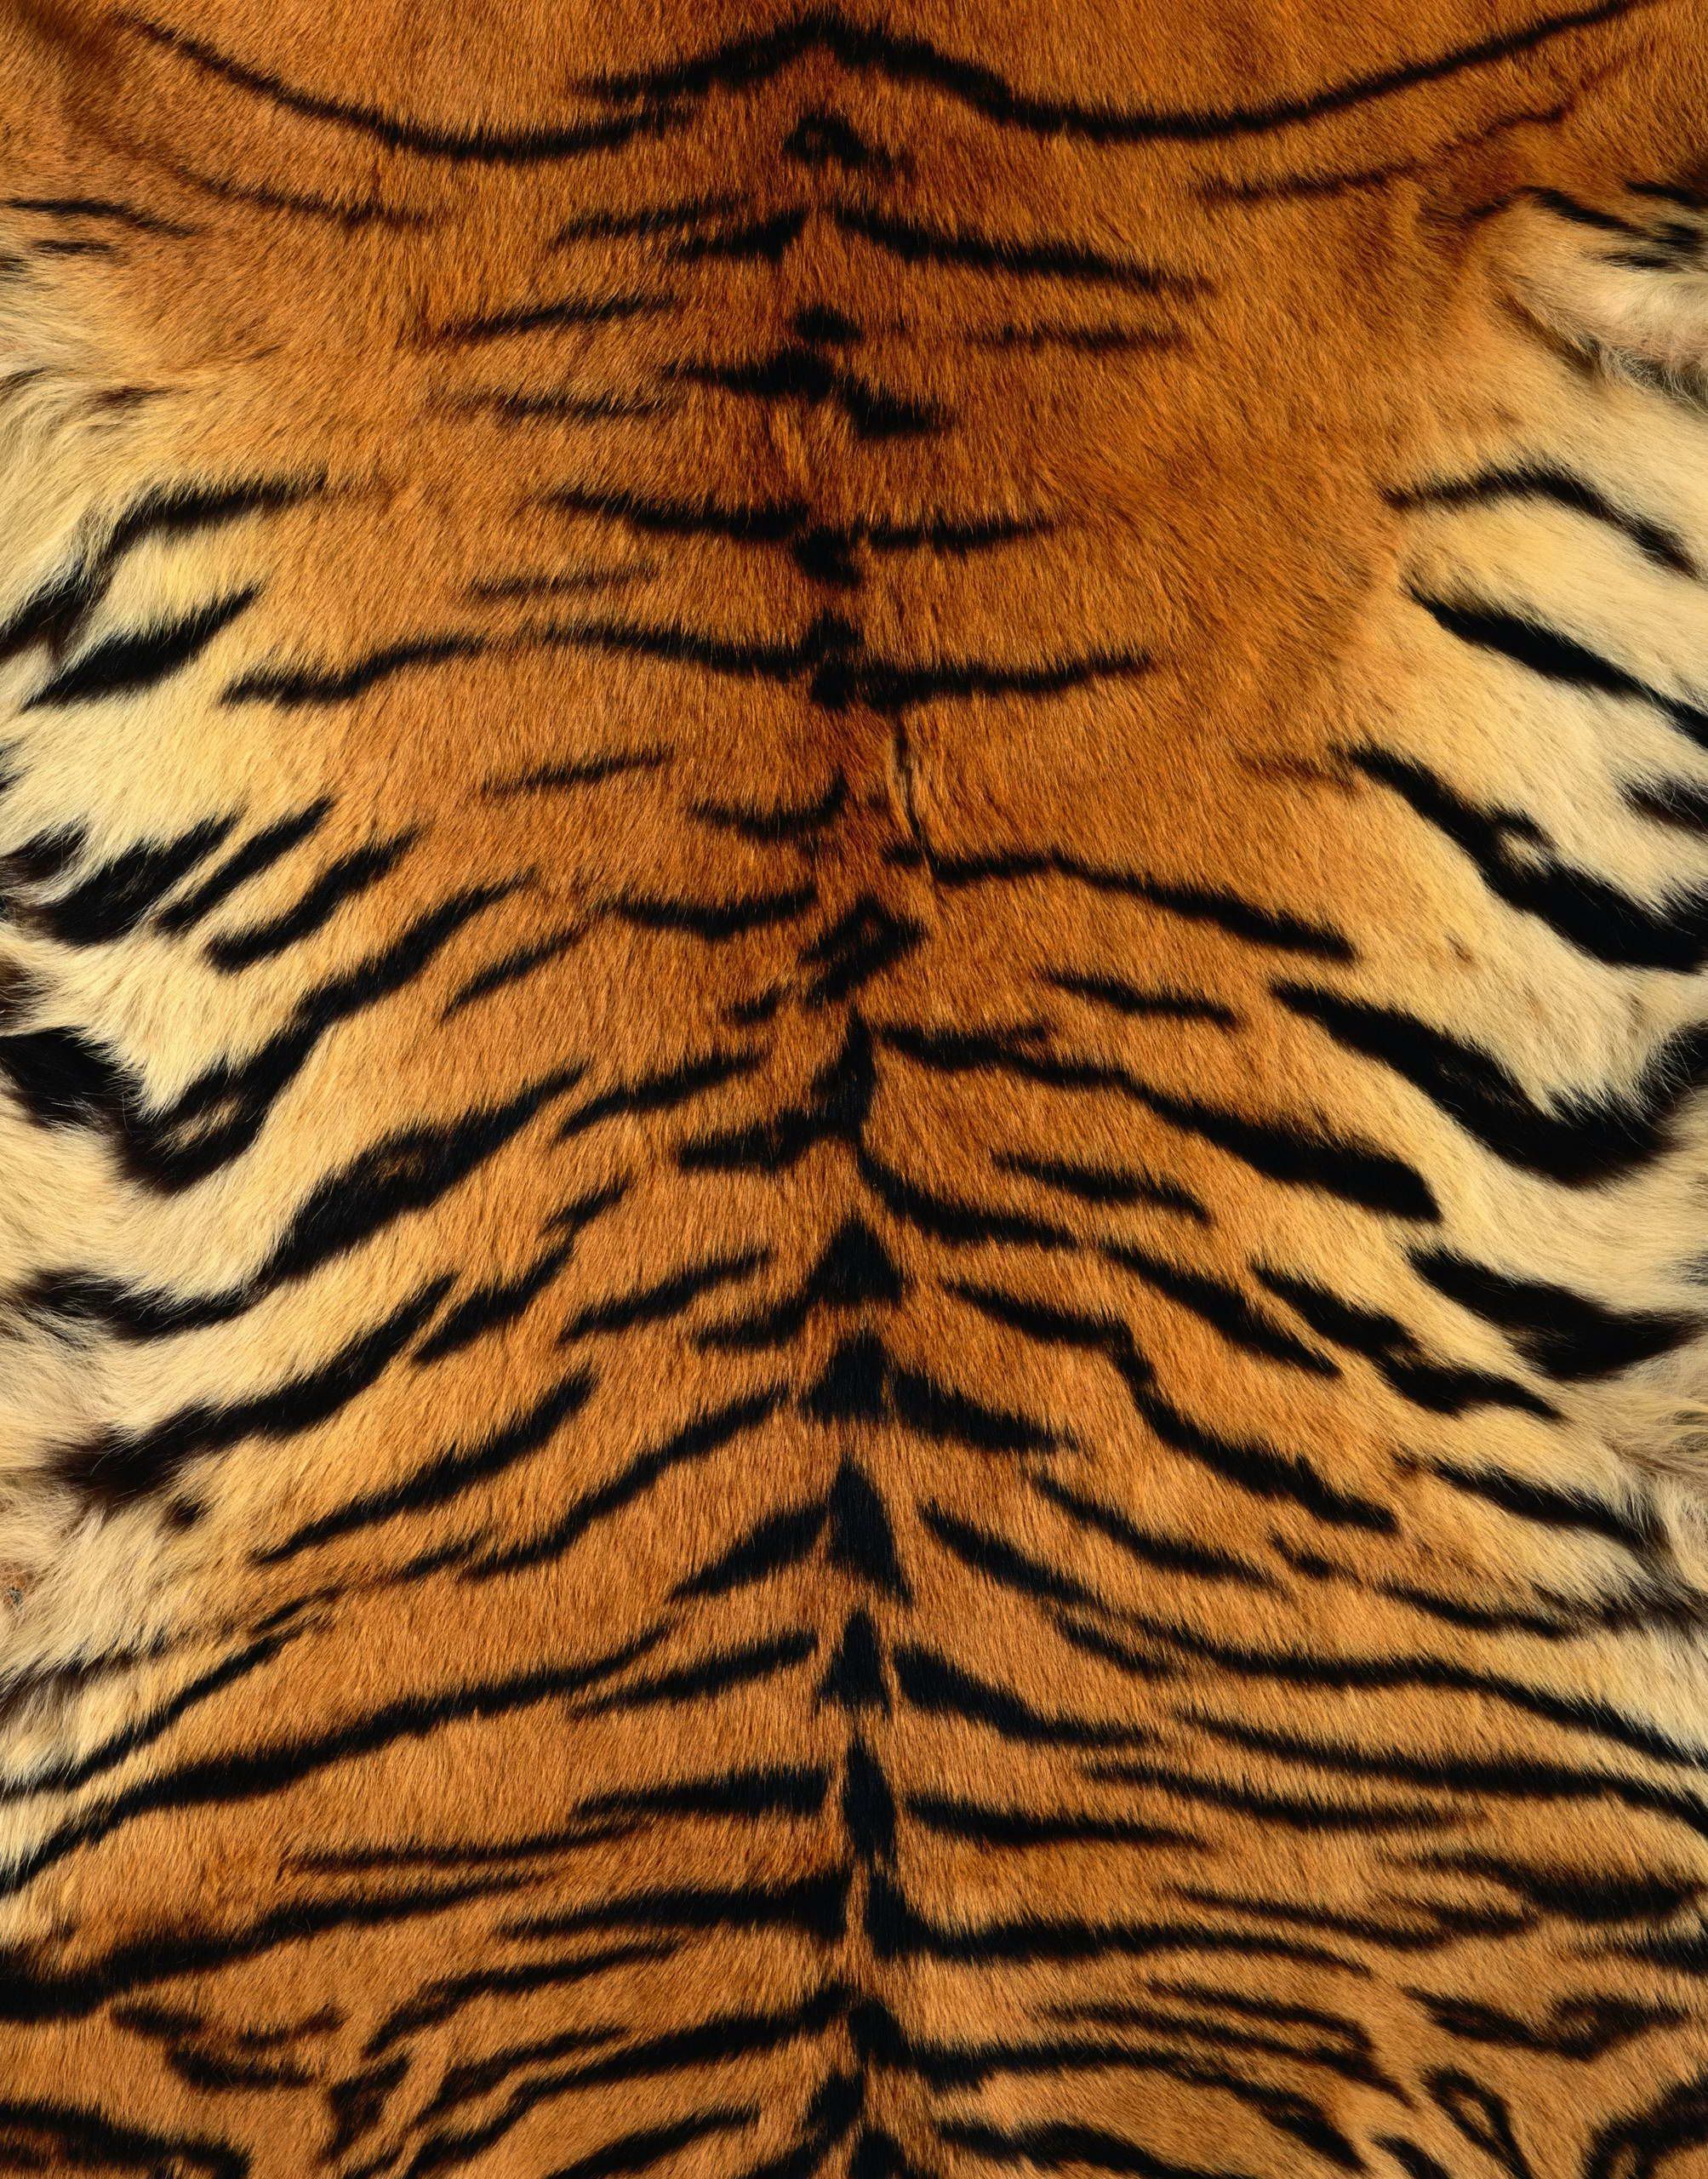 Animal [2007 × 2560 píxeles] | ANIMALES en 2019 | Estampado de tigre, piel de tigre